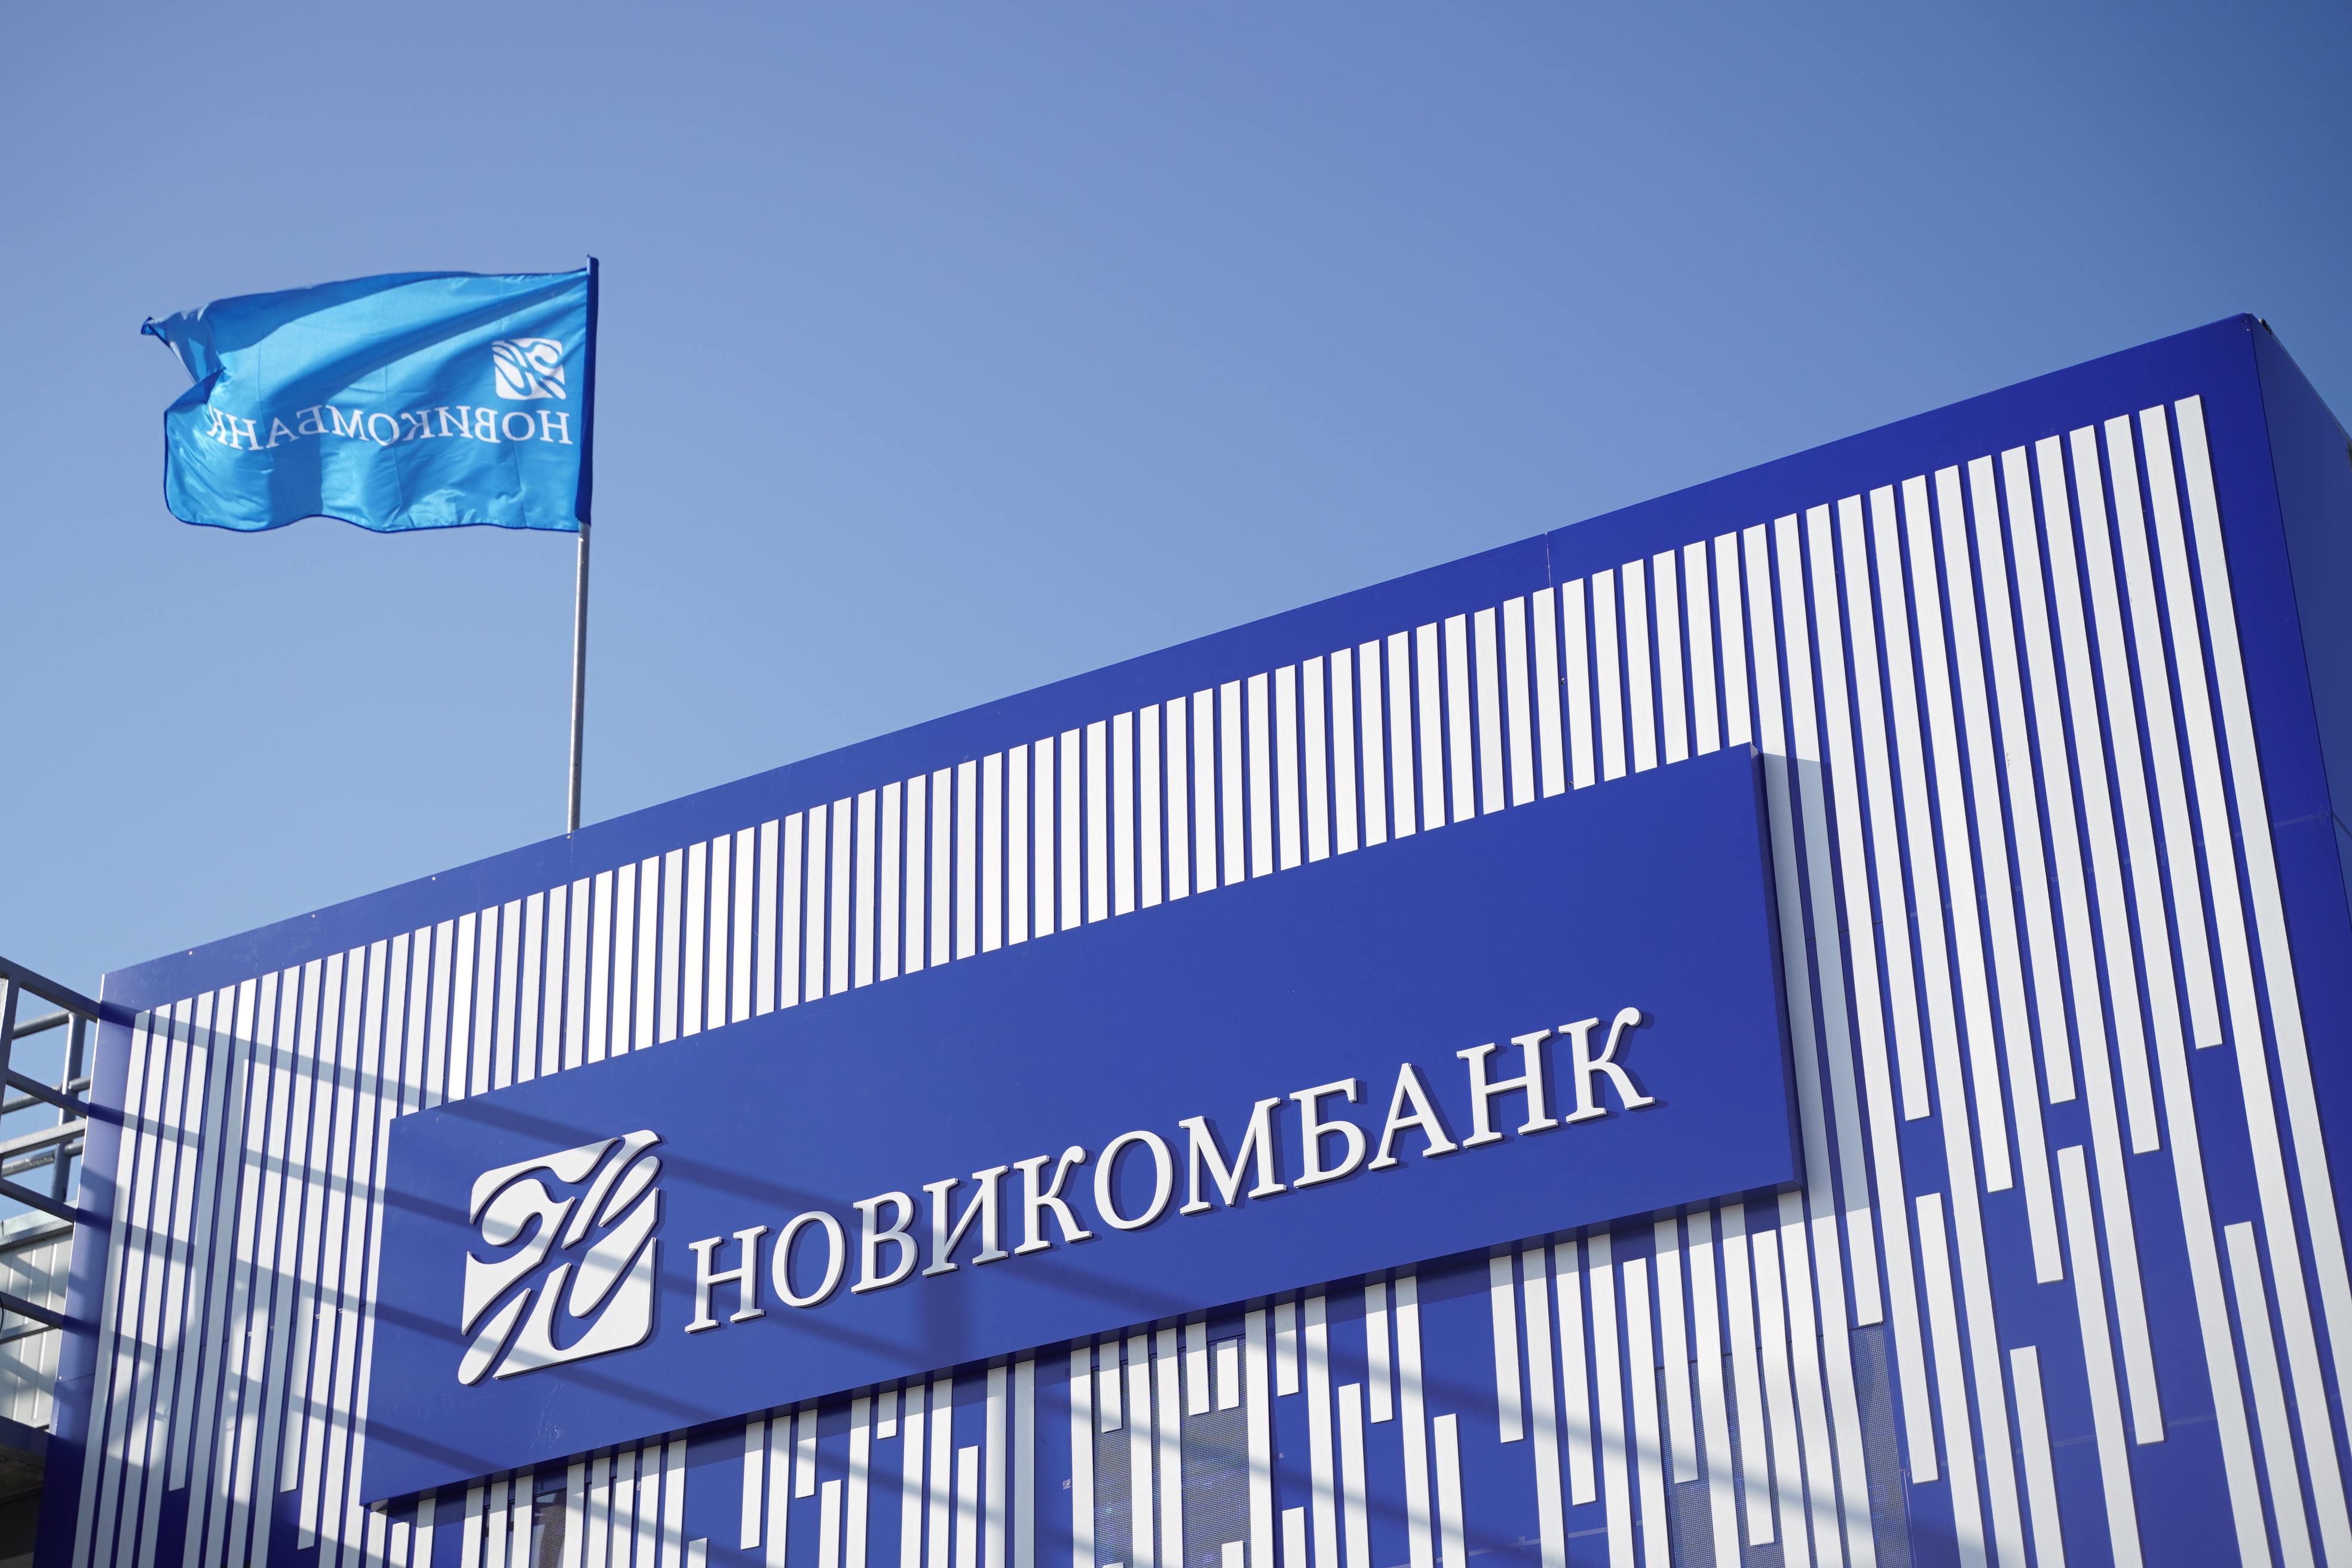 Новикомбанк представил меры поддержки малого и среднего бизнеса на форуме «Промтехэкспо-2023» 